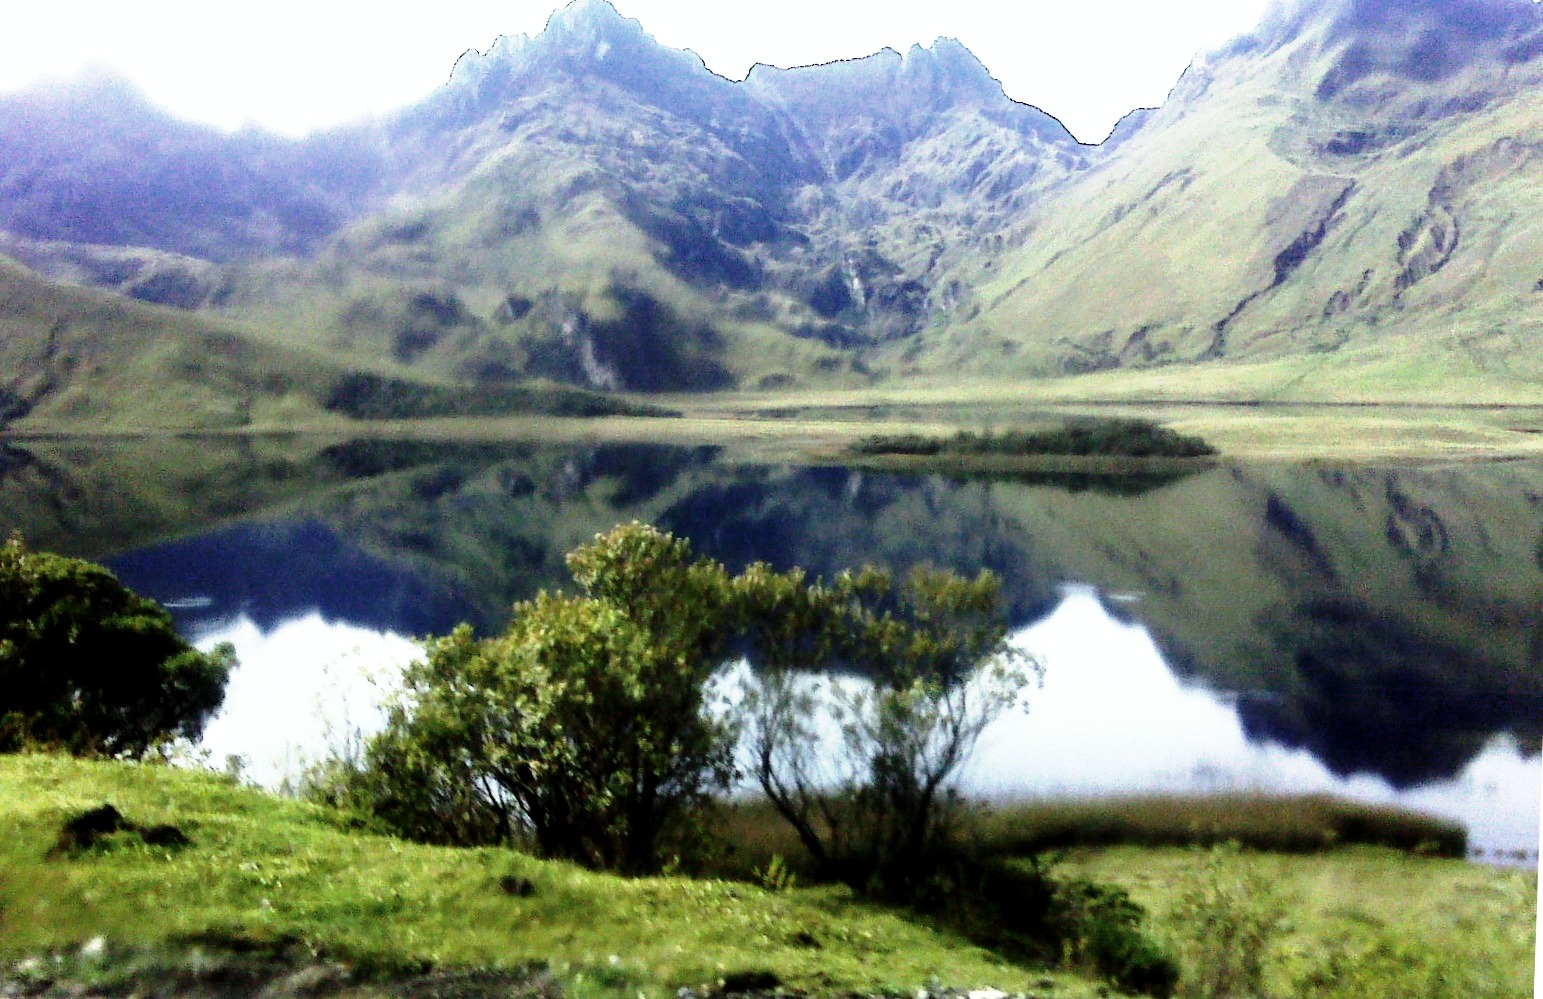 laguna de Atillo, Chimborazo-Ecuador q 3500 m snm